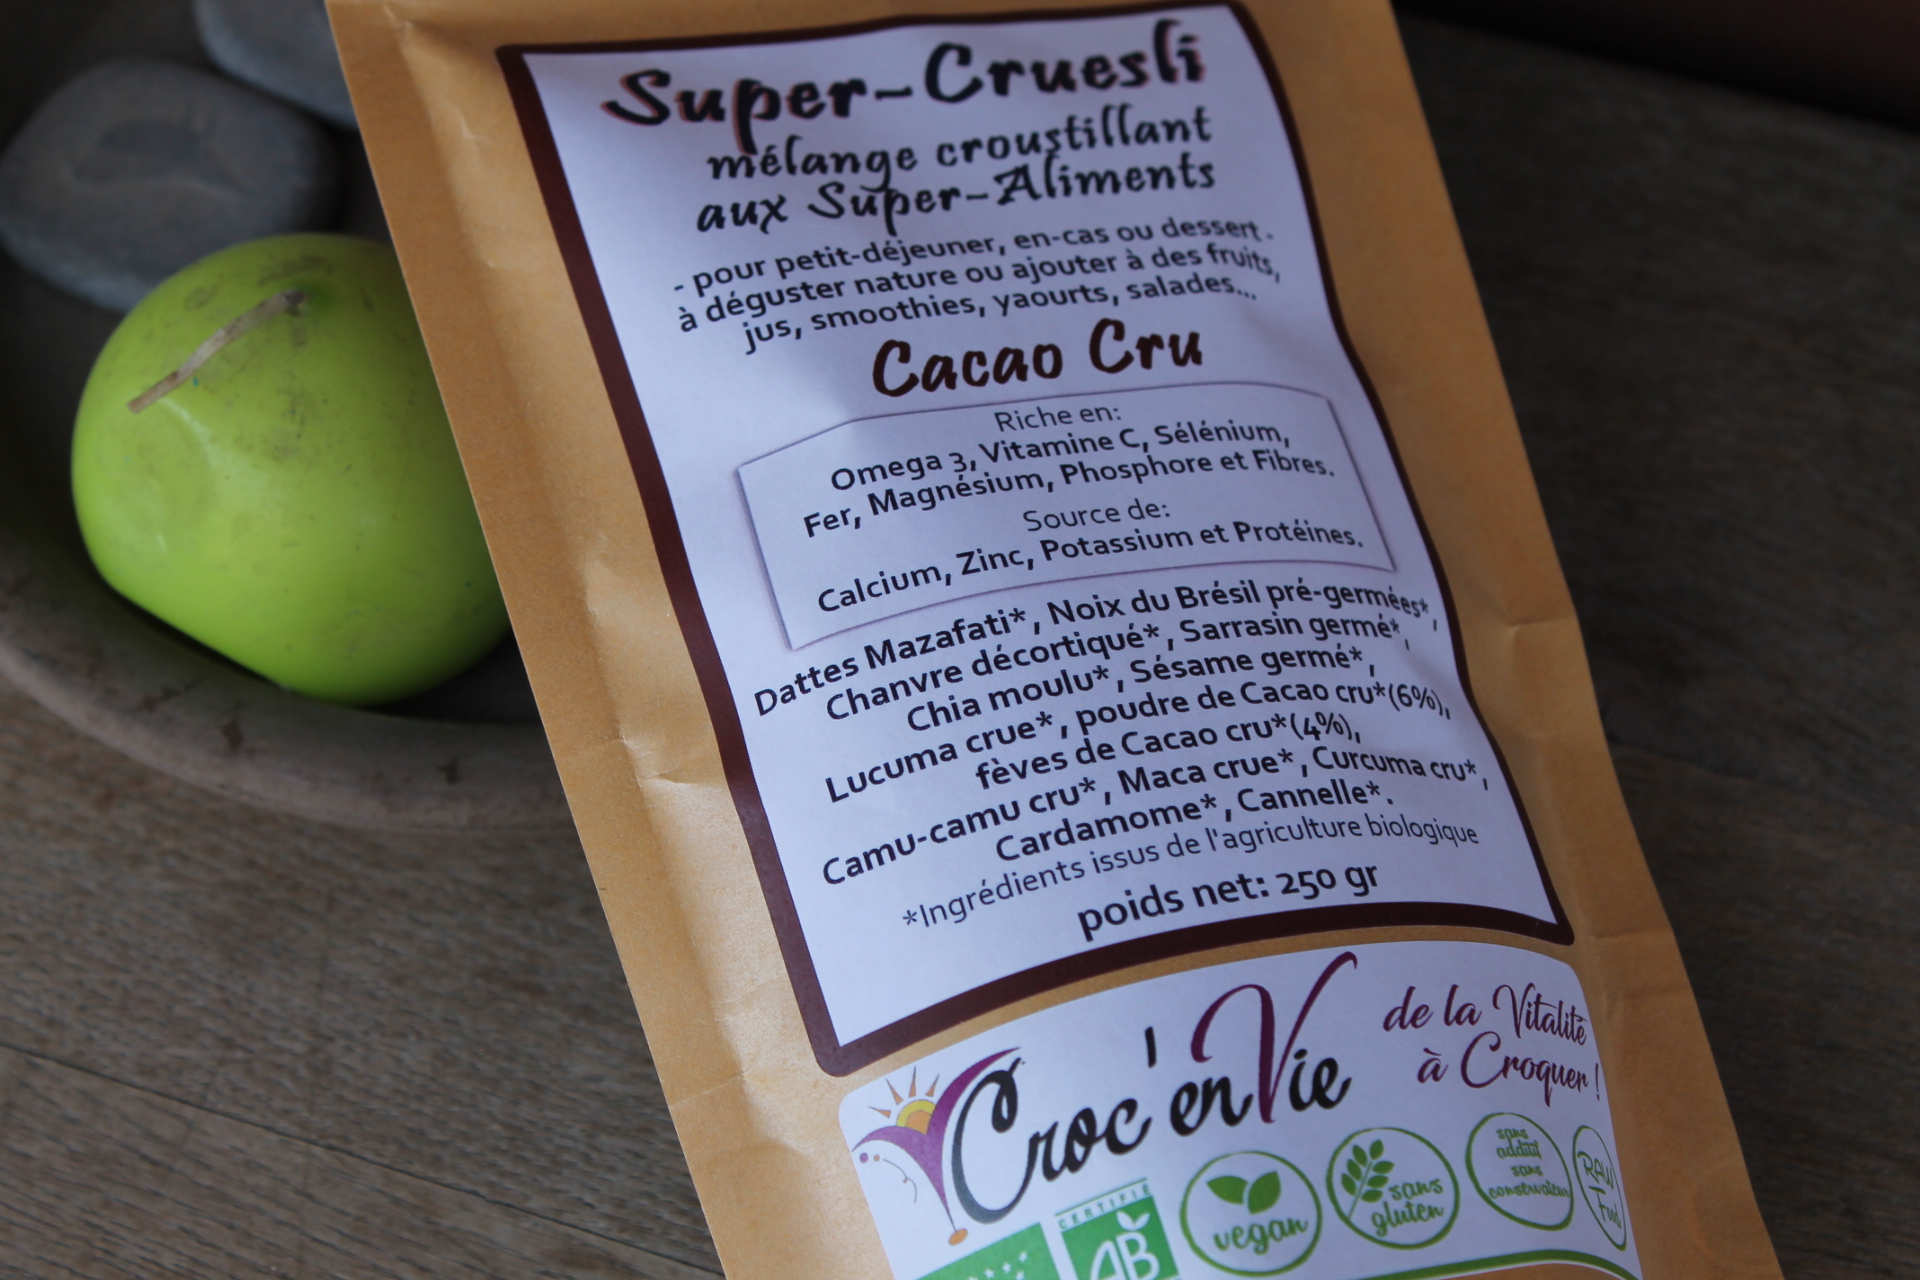 CROC'enVIE - Super Cruesli Cacao Cru 